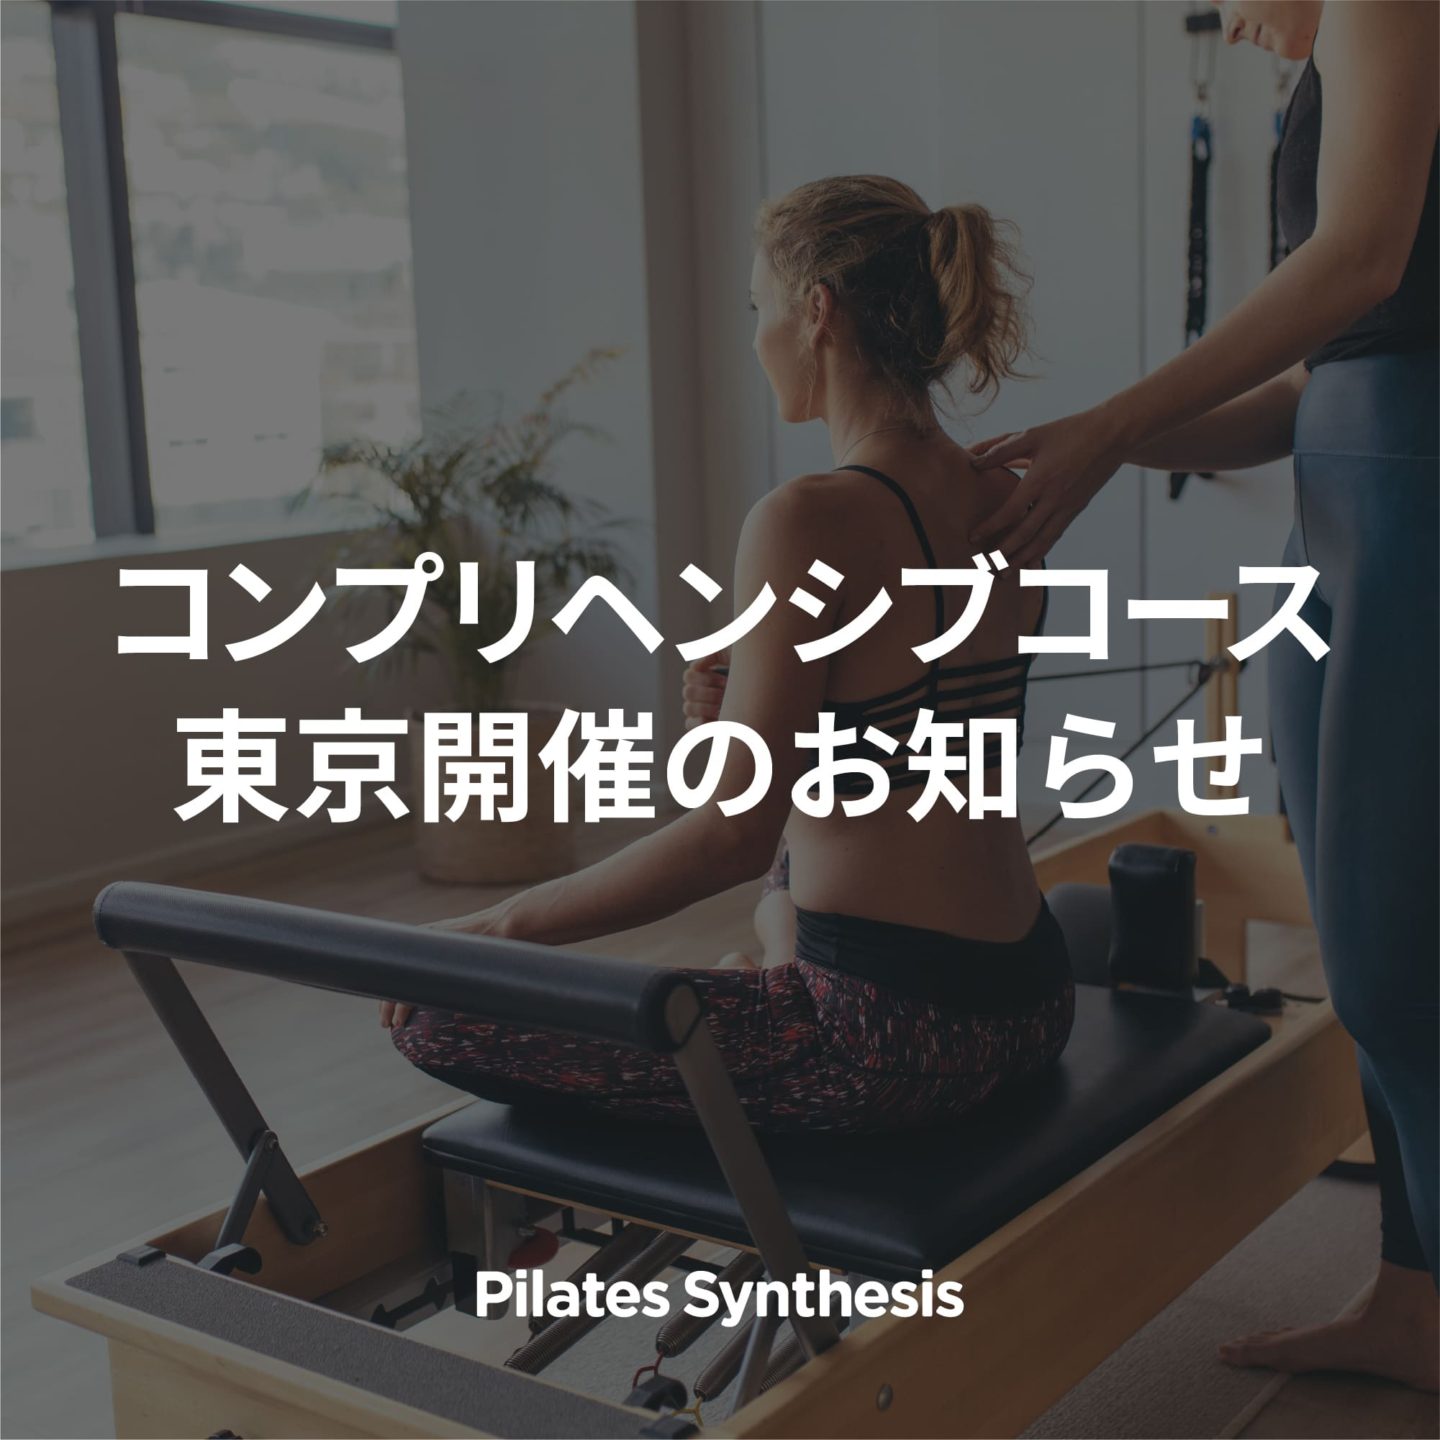 告知画像：【Pilates Synthesis】2023年度コンプリヘンシブコース東京開催のお知らせ